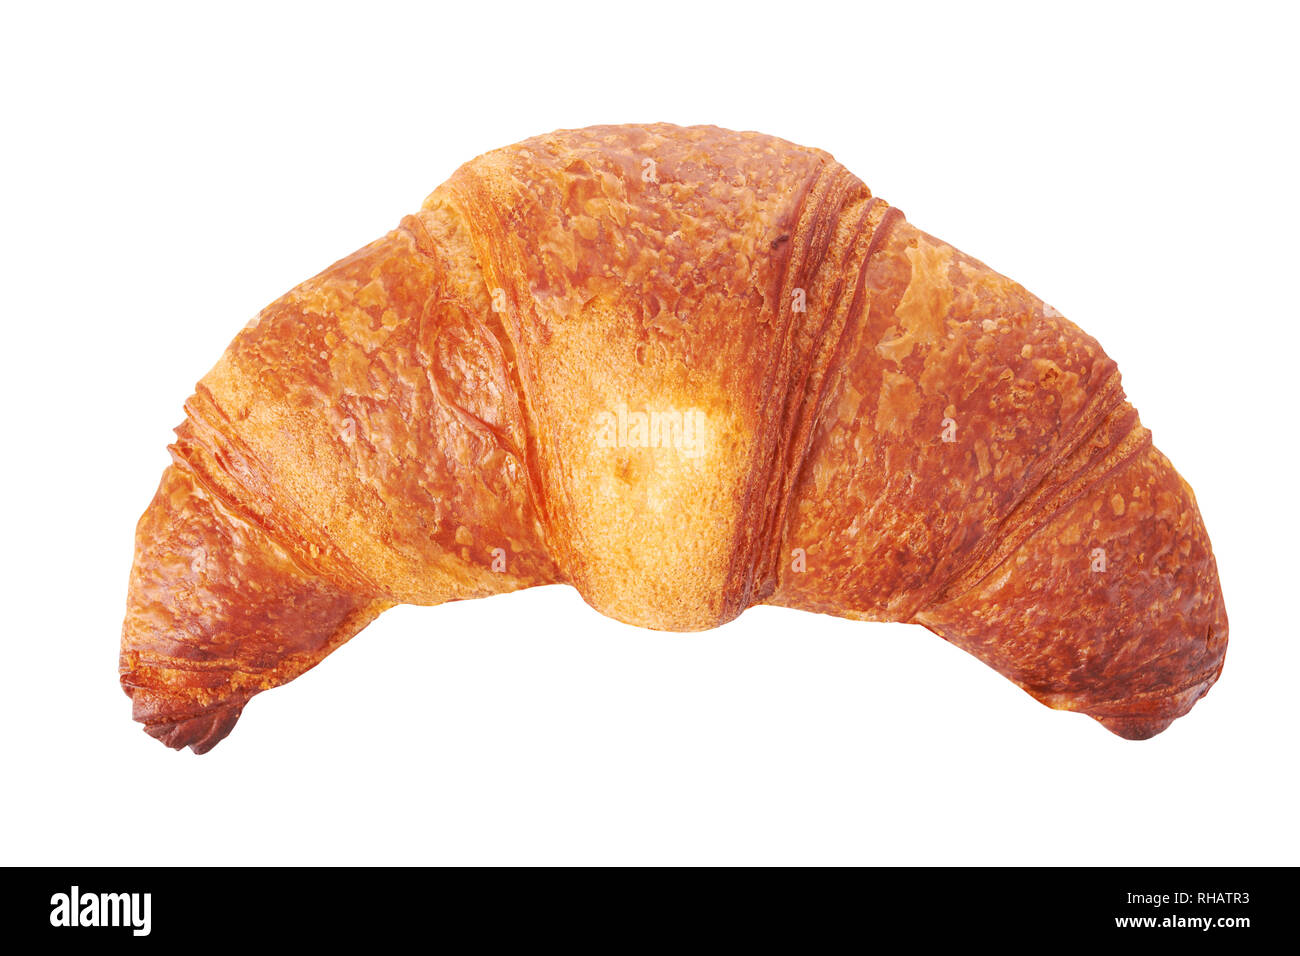 Fresh croissant isolated on white background Stock Photo